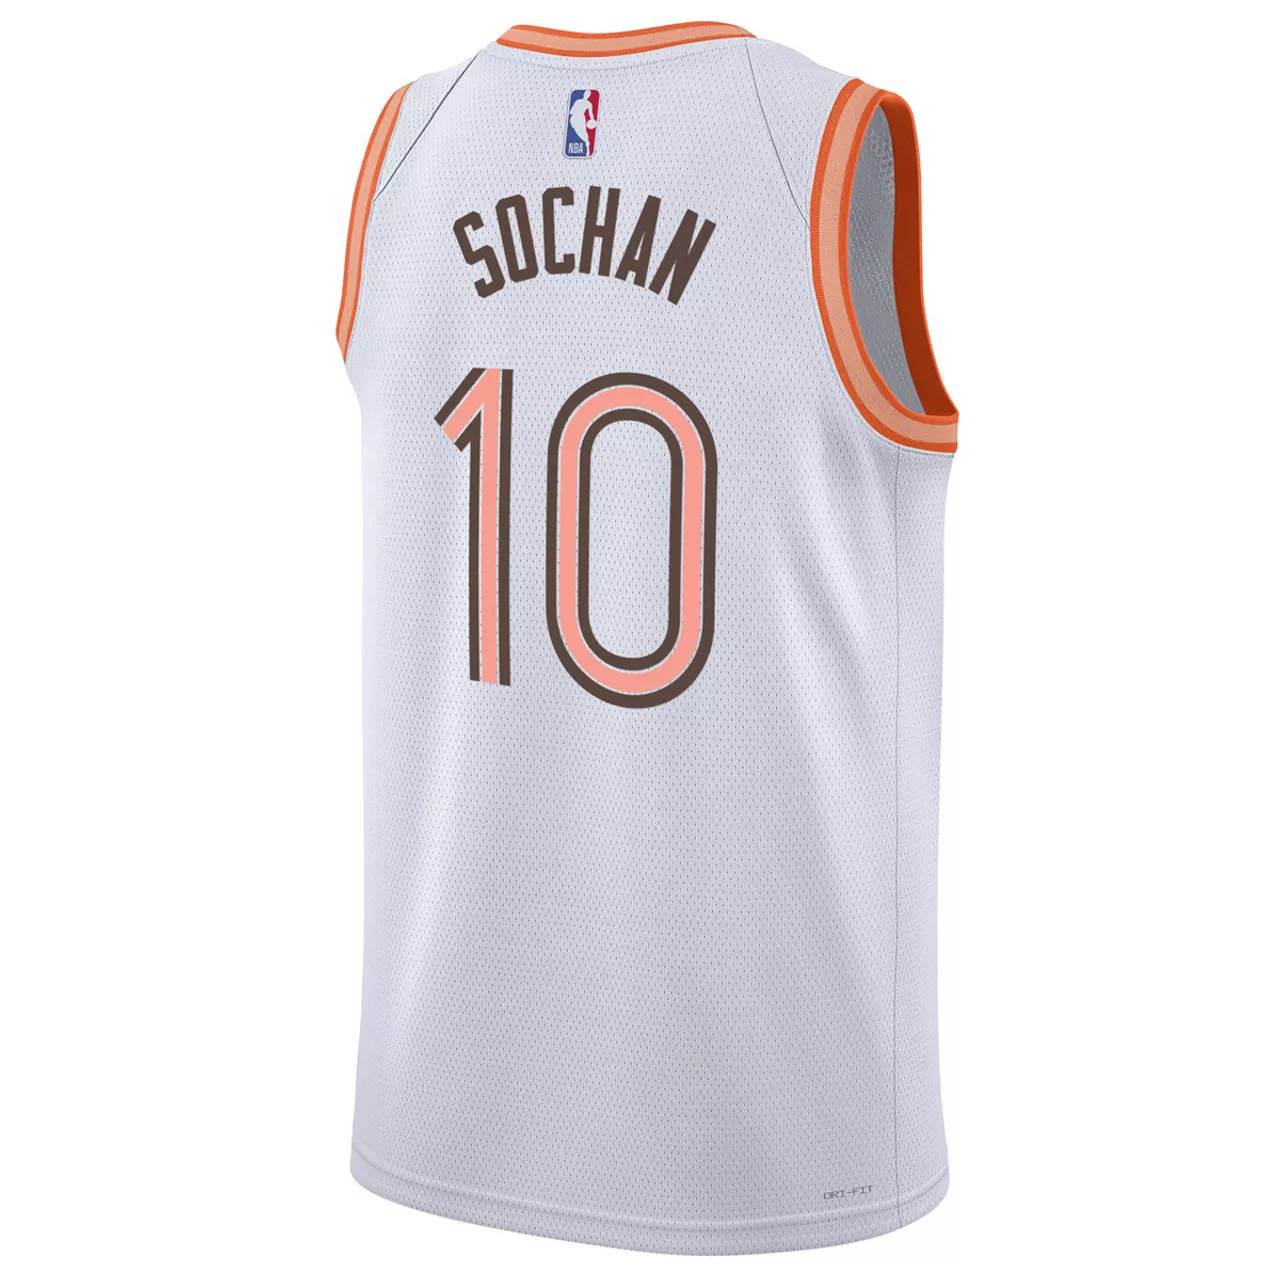 Men's San Antonio Spurs Jeremy Sochan #10 Swingman Jersey 2023/24 - City Edition - thejerseys